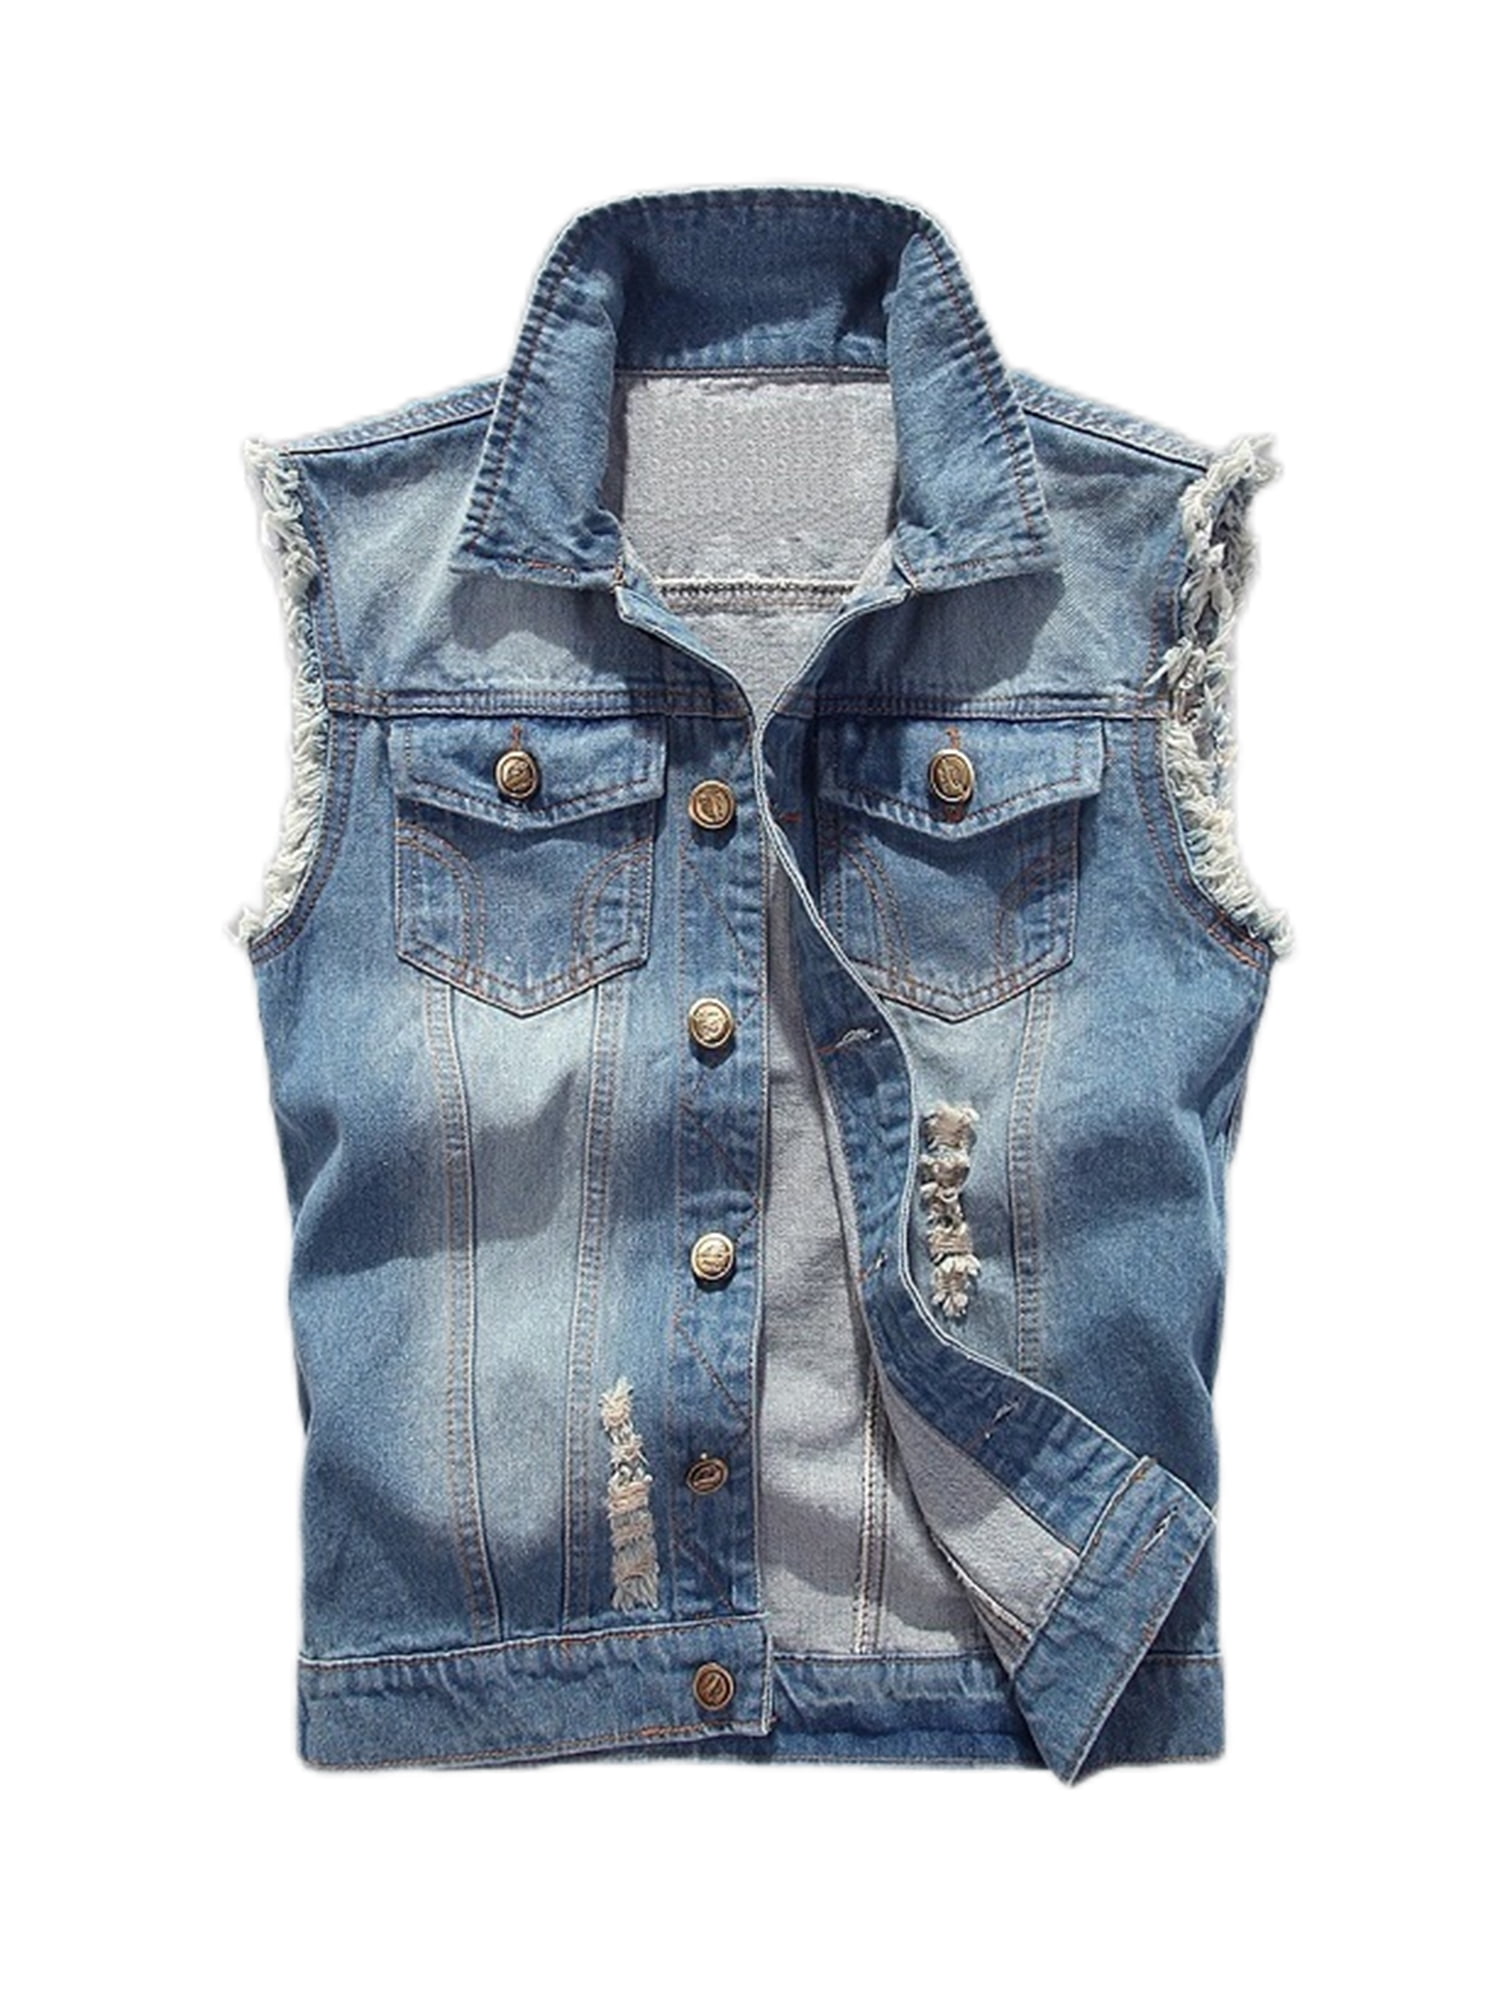 Visit our online shop Men's Casual Button Up Denim Vest Vintage ...